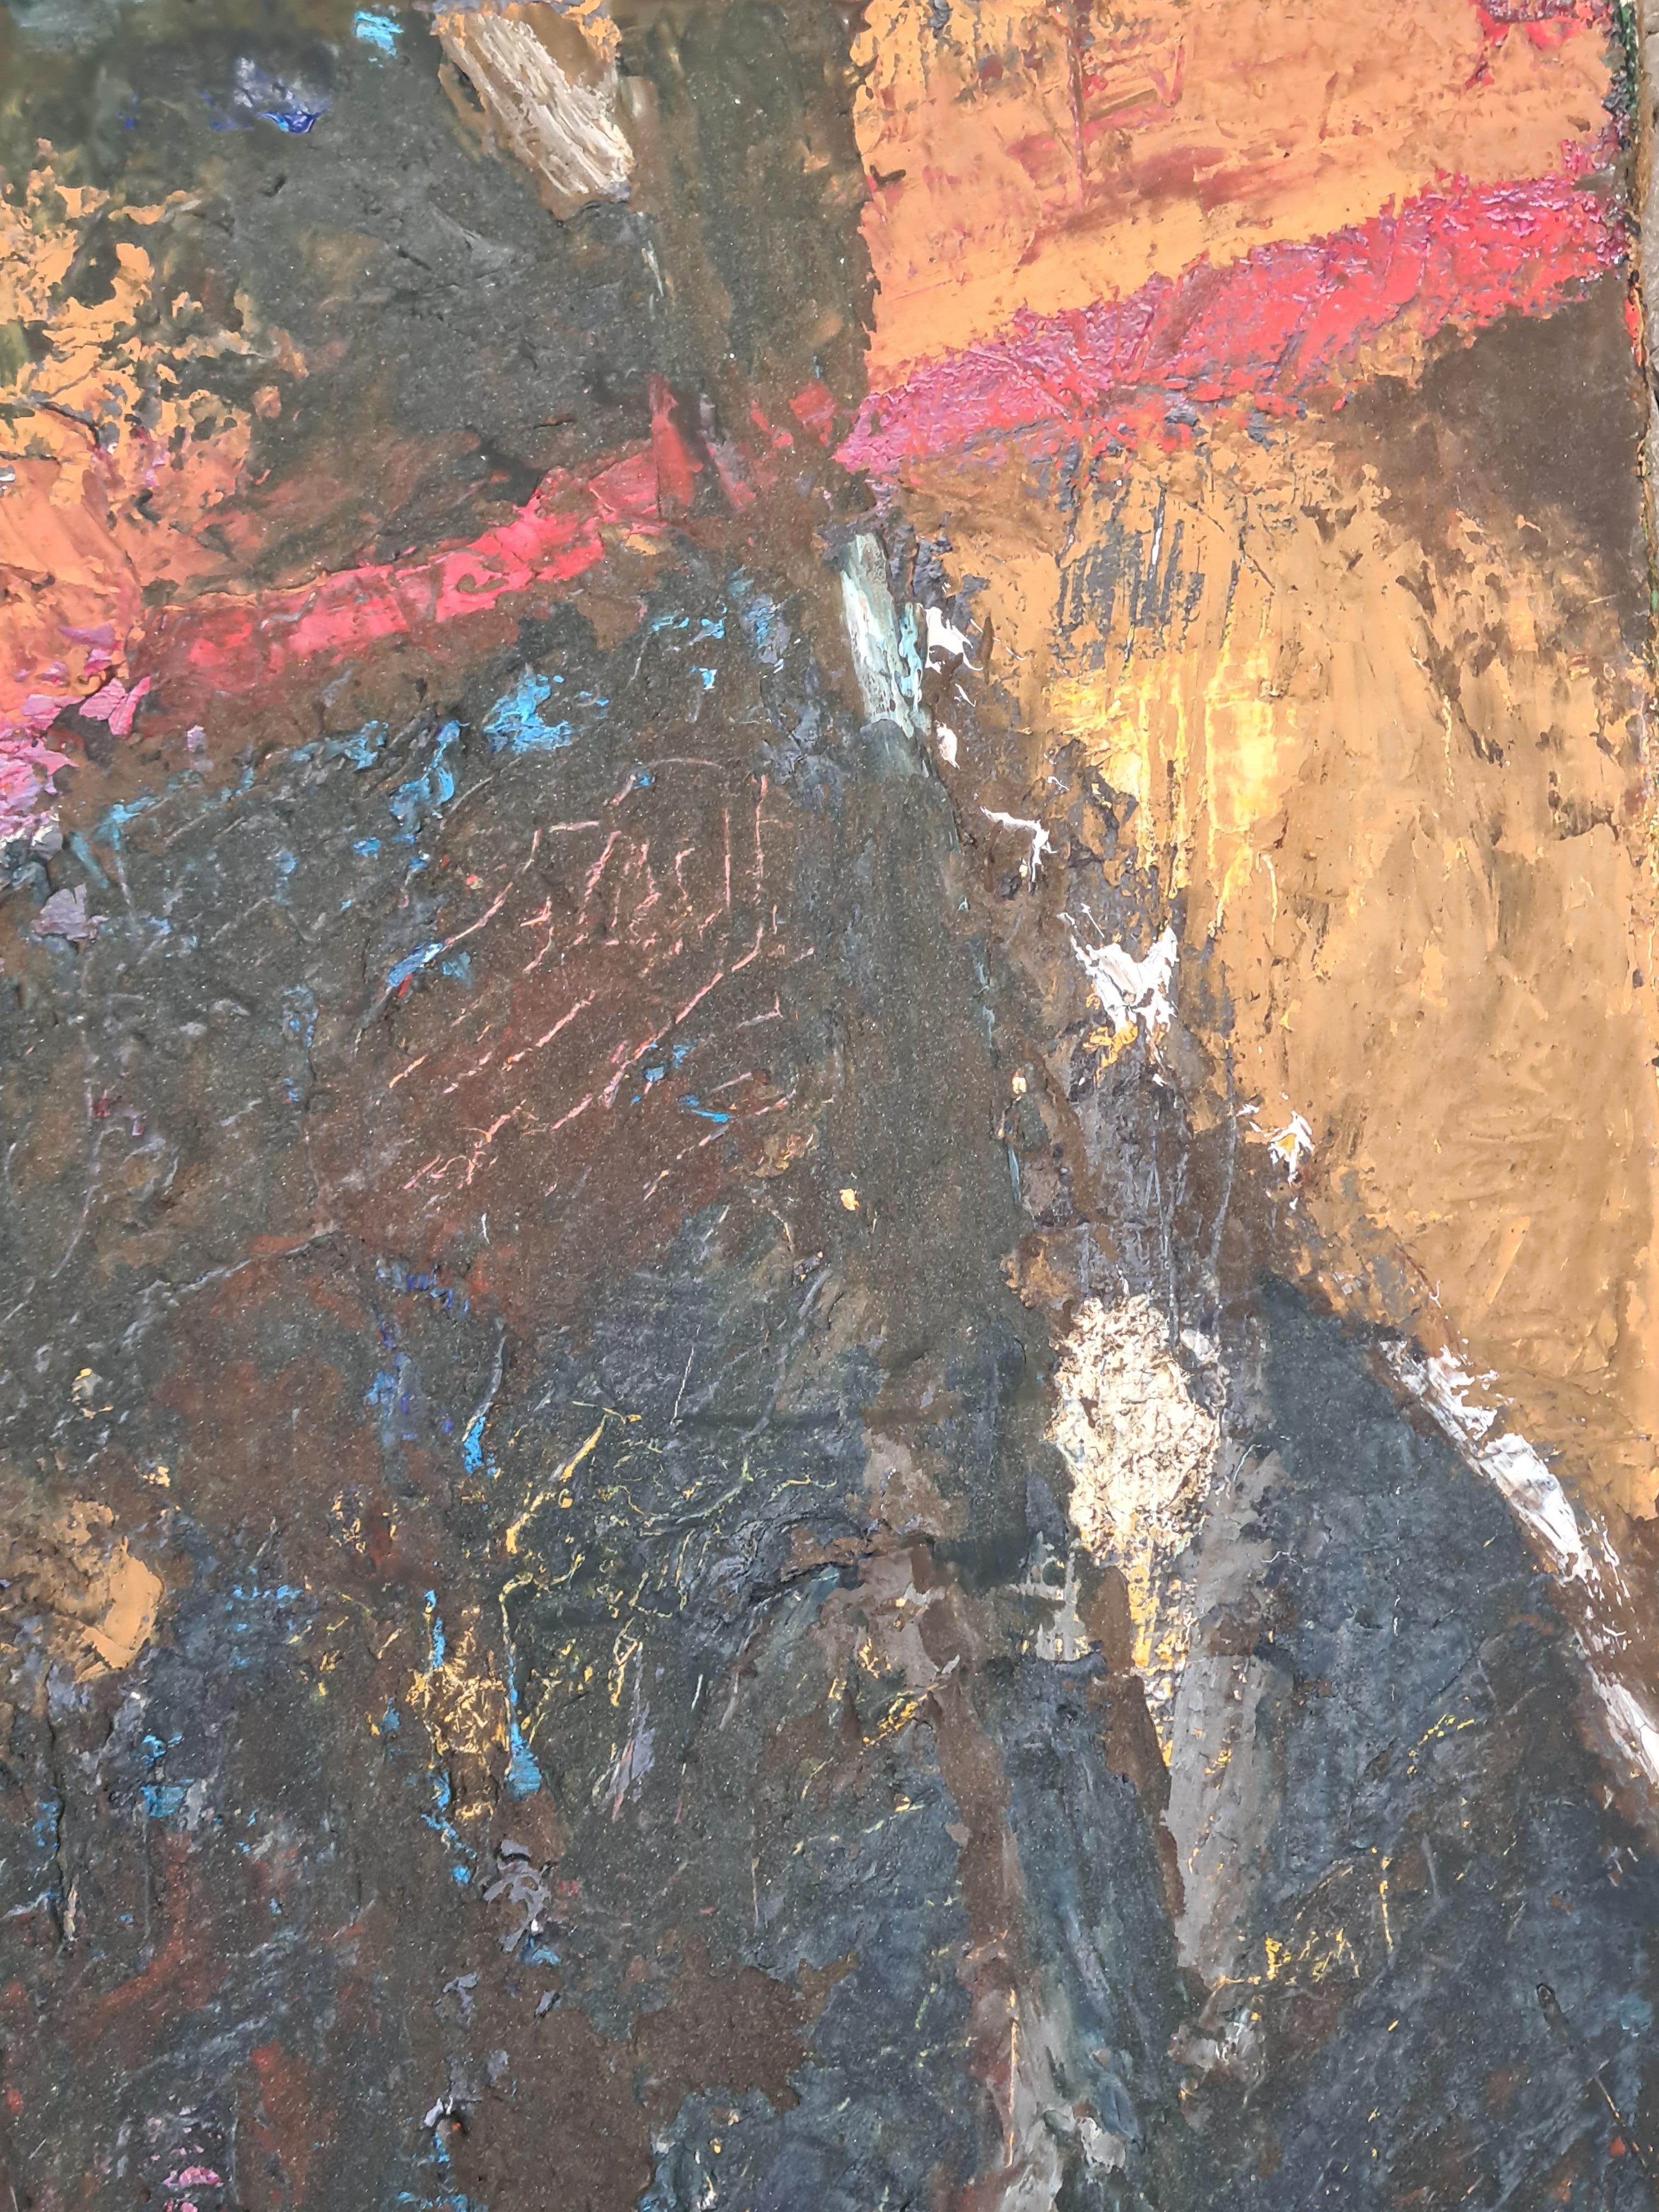 huile sur toile abstraite moderne du 20ème siècle intitulée 'Rectifie', attribuée à l'artiste français Norbert Palmade. Le tableau n'est pas signé mais a été acheté dans son atelier et avec une collection de ses peintures et lui est donc attribué.